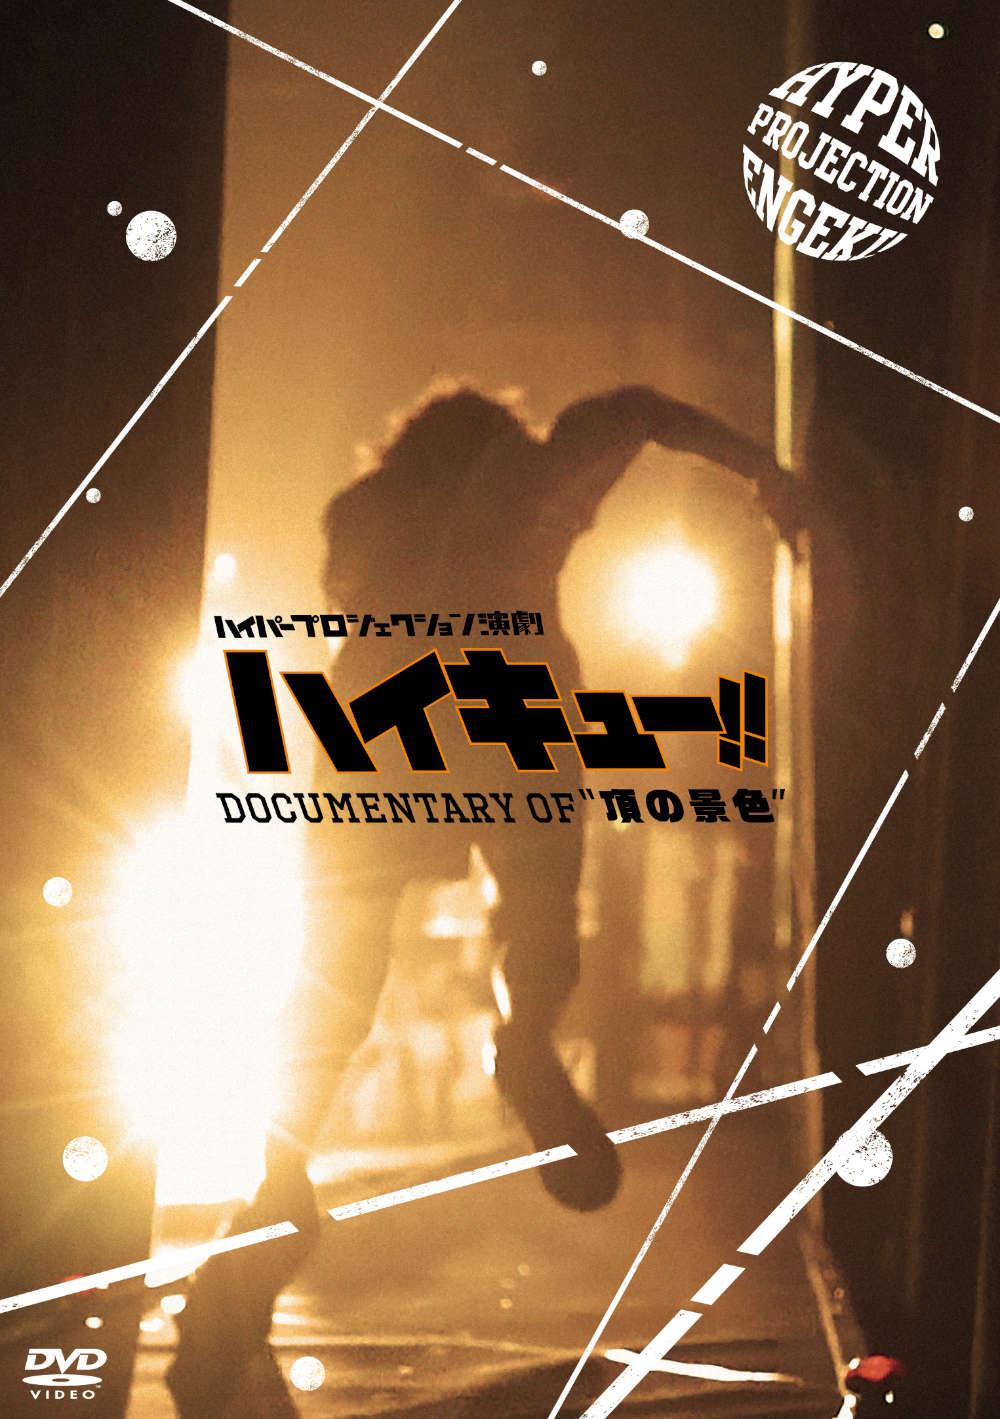 ハイパープロジェクション演劇「ハイキュー!!」Documentary of "頂の景色" DVD